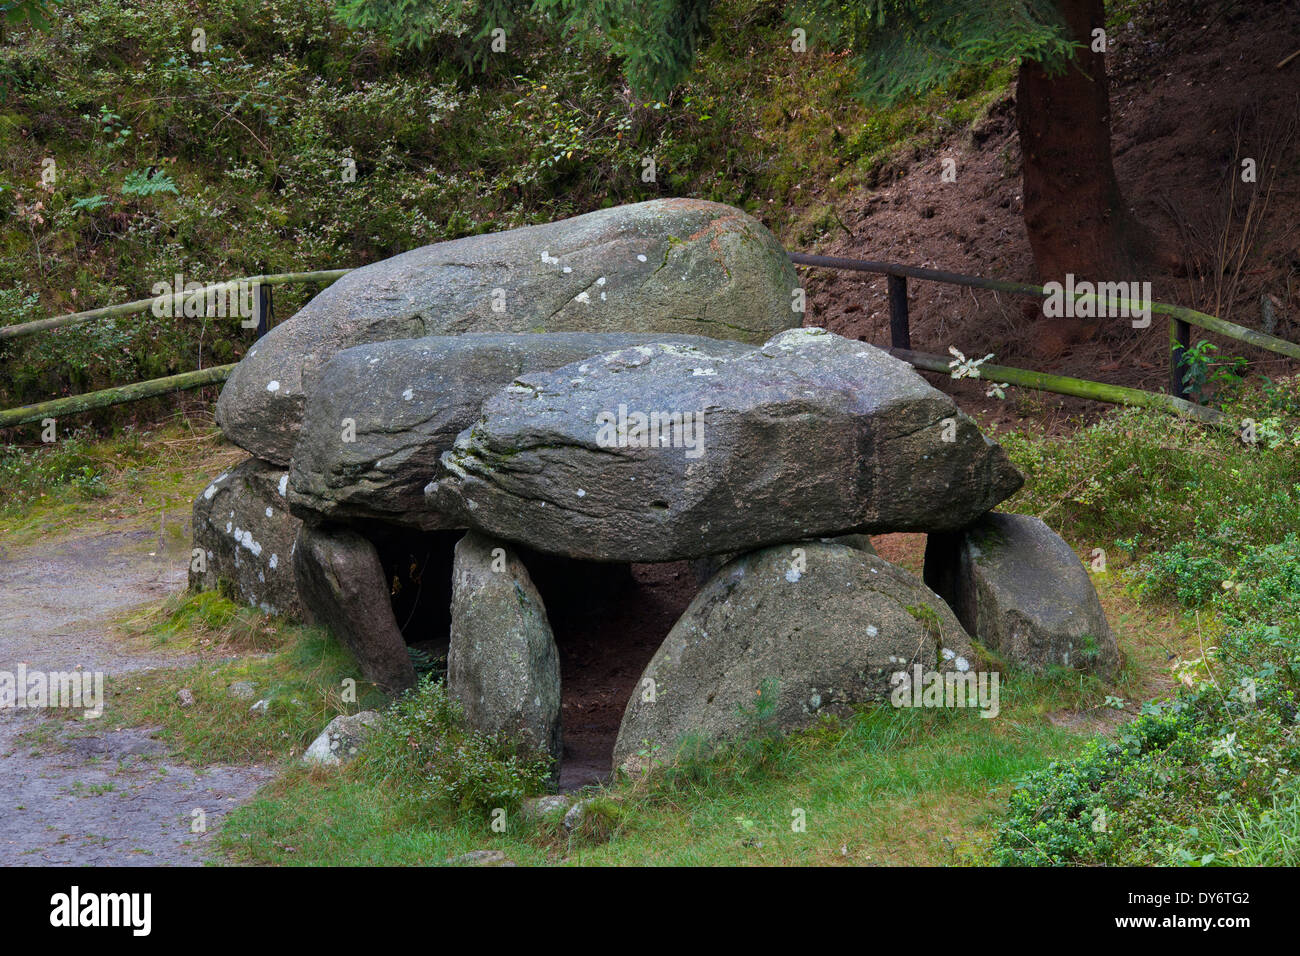 Seven Stone Houses / Sieben Steinhäuser, Neolithic dolmens at Bergen, Lüneburg Heath / Lunenburg Heathland, Saxony, Germany Stock Photo